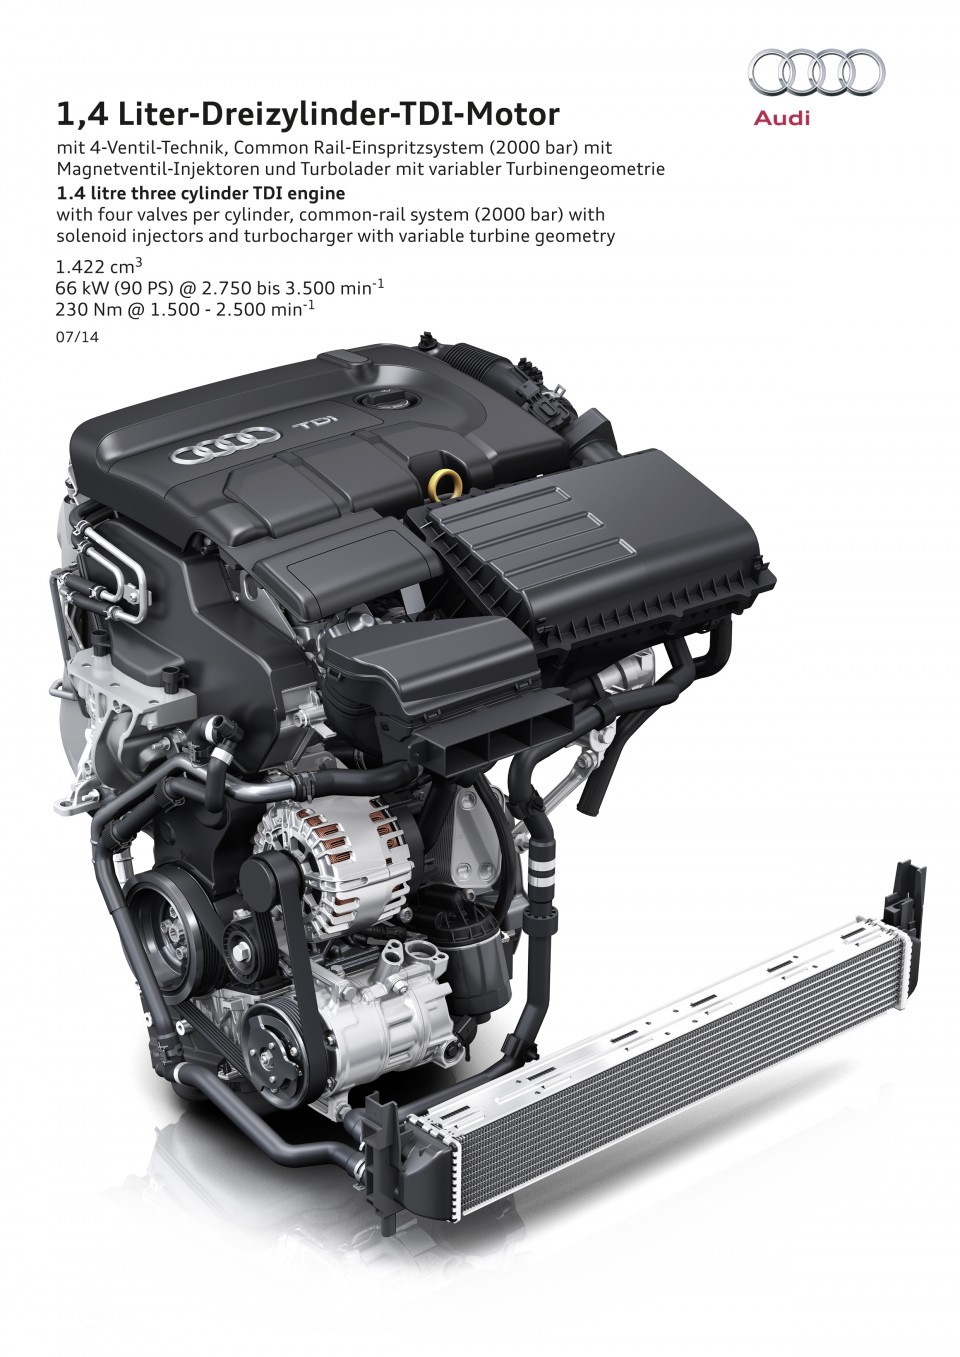 Nuevo motor 1.4 TDI de Audi, su propulsor diésel más pequeño